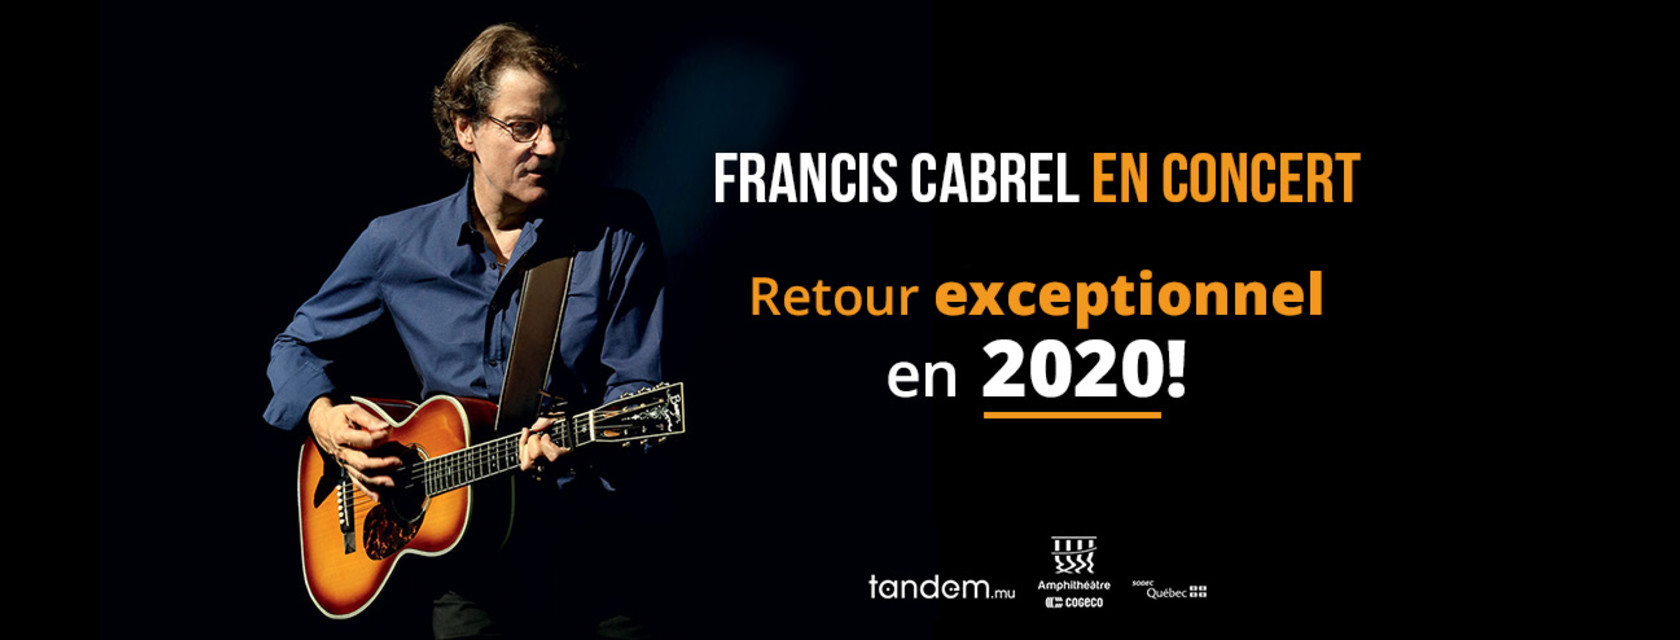 Retour exceptionnel pour Francis Cabrel en 2020